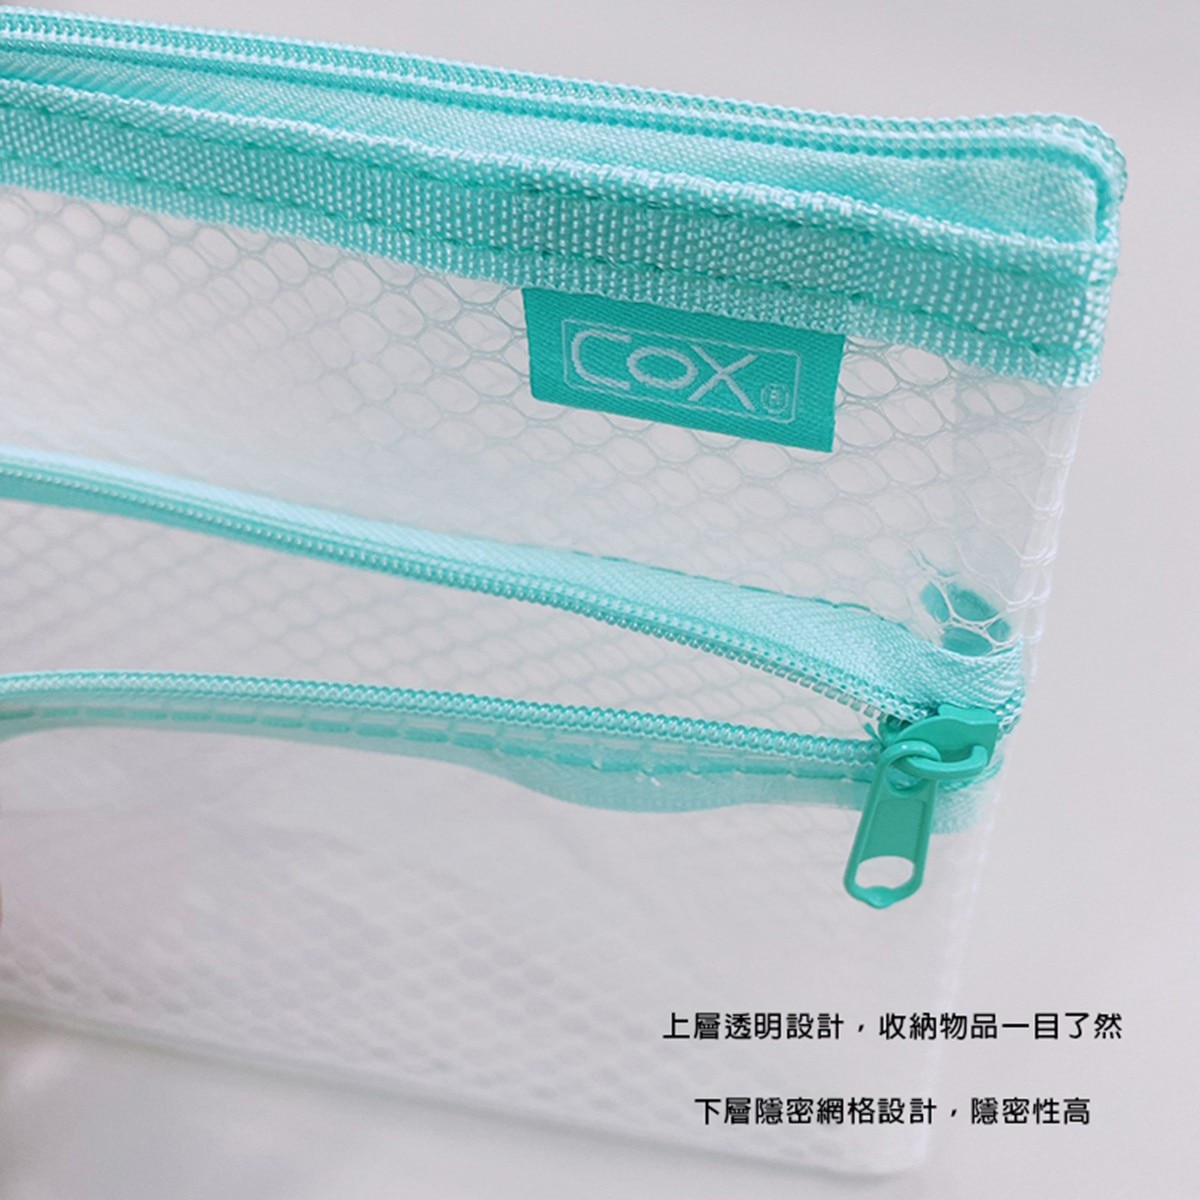 COX A5環保雙層【網格+透明】收納拉鍊袋 綠，EVA環保材質，安全無毒，貼心收納、多樣收納一袋搞定。